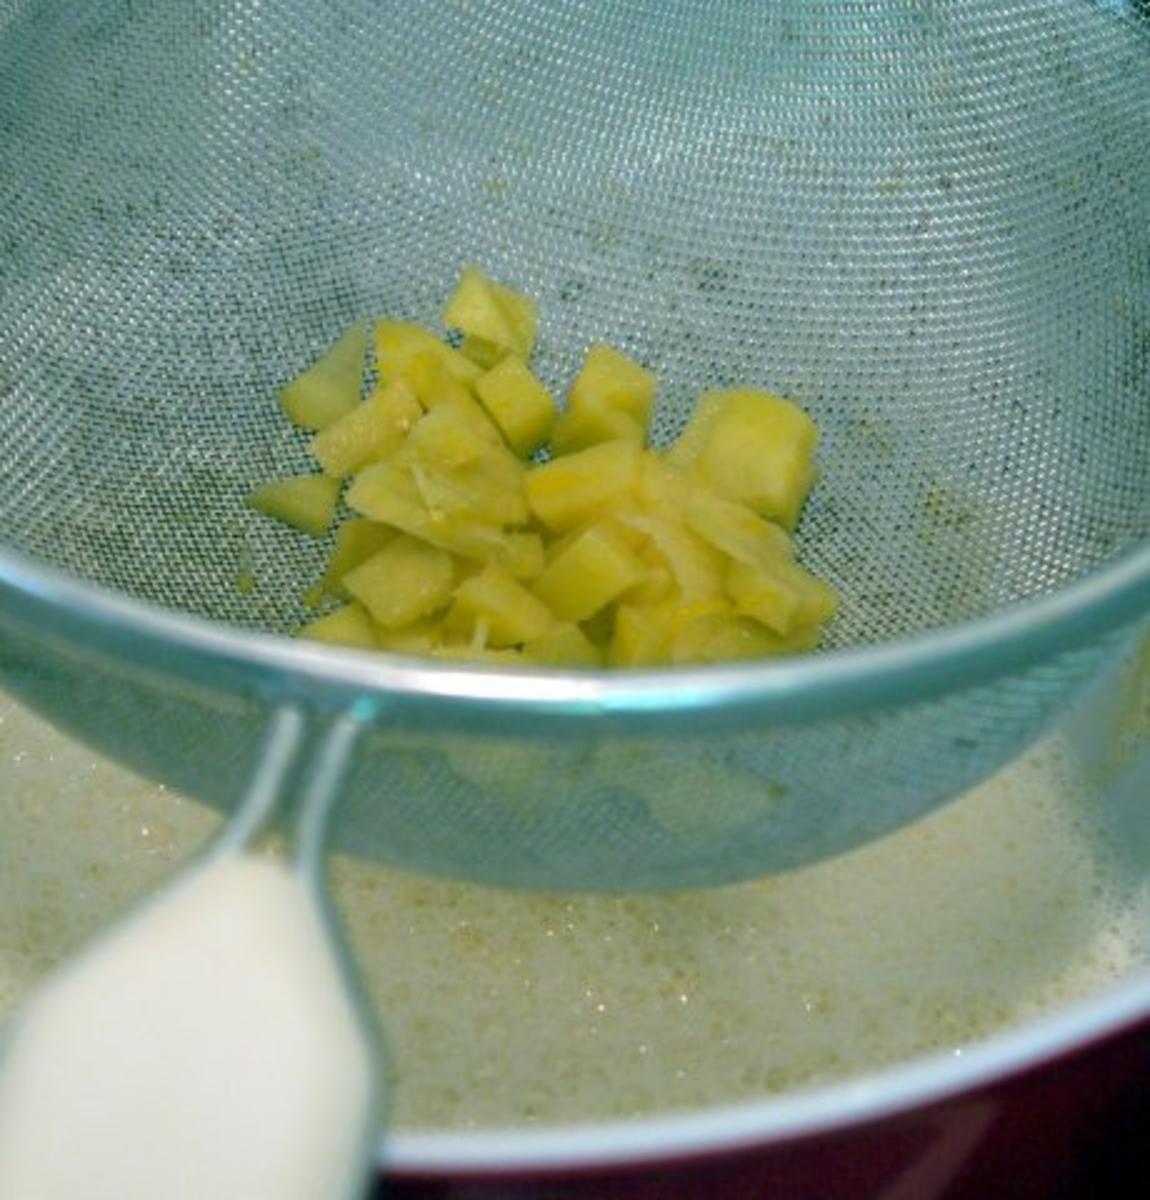 Zitronen-Honig-Ingwer-Creme mit Creme-Fraiche-Sauce - Rezept - Bild Nr. 5